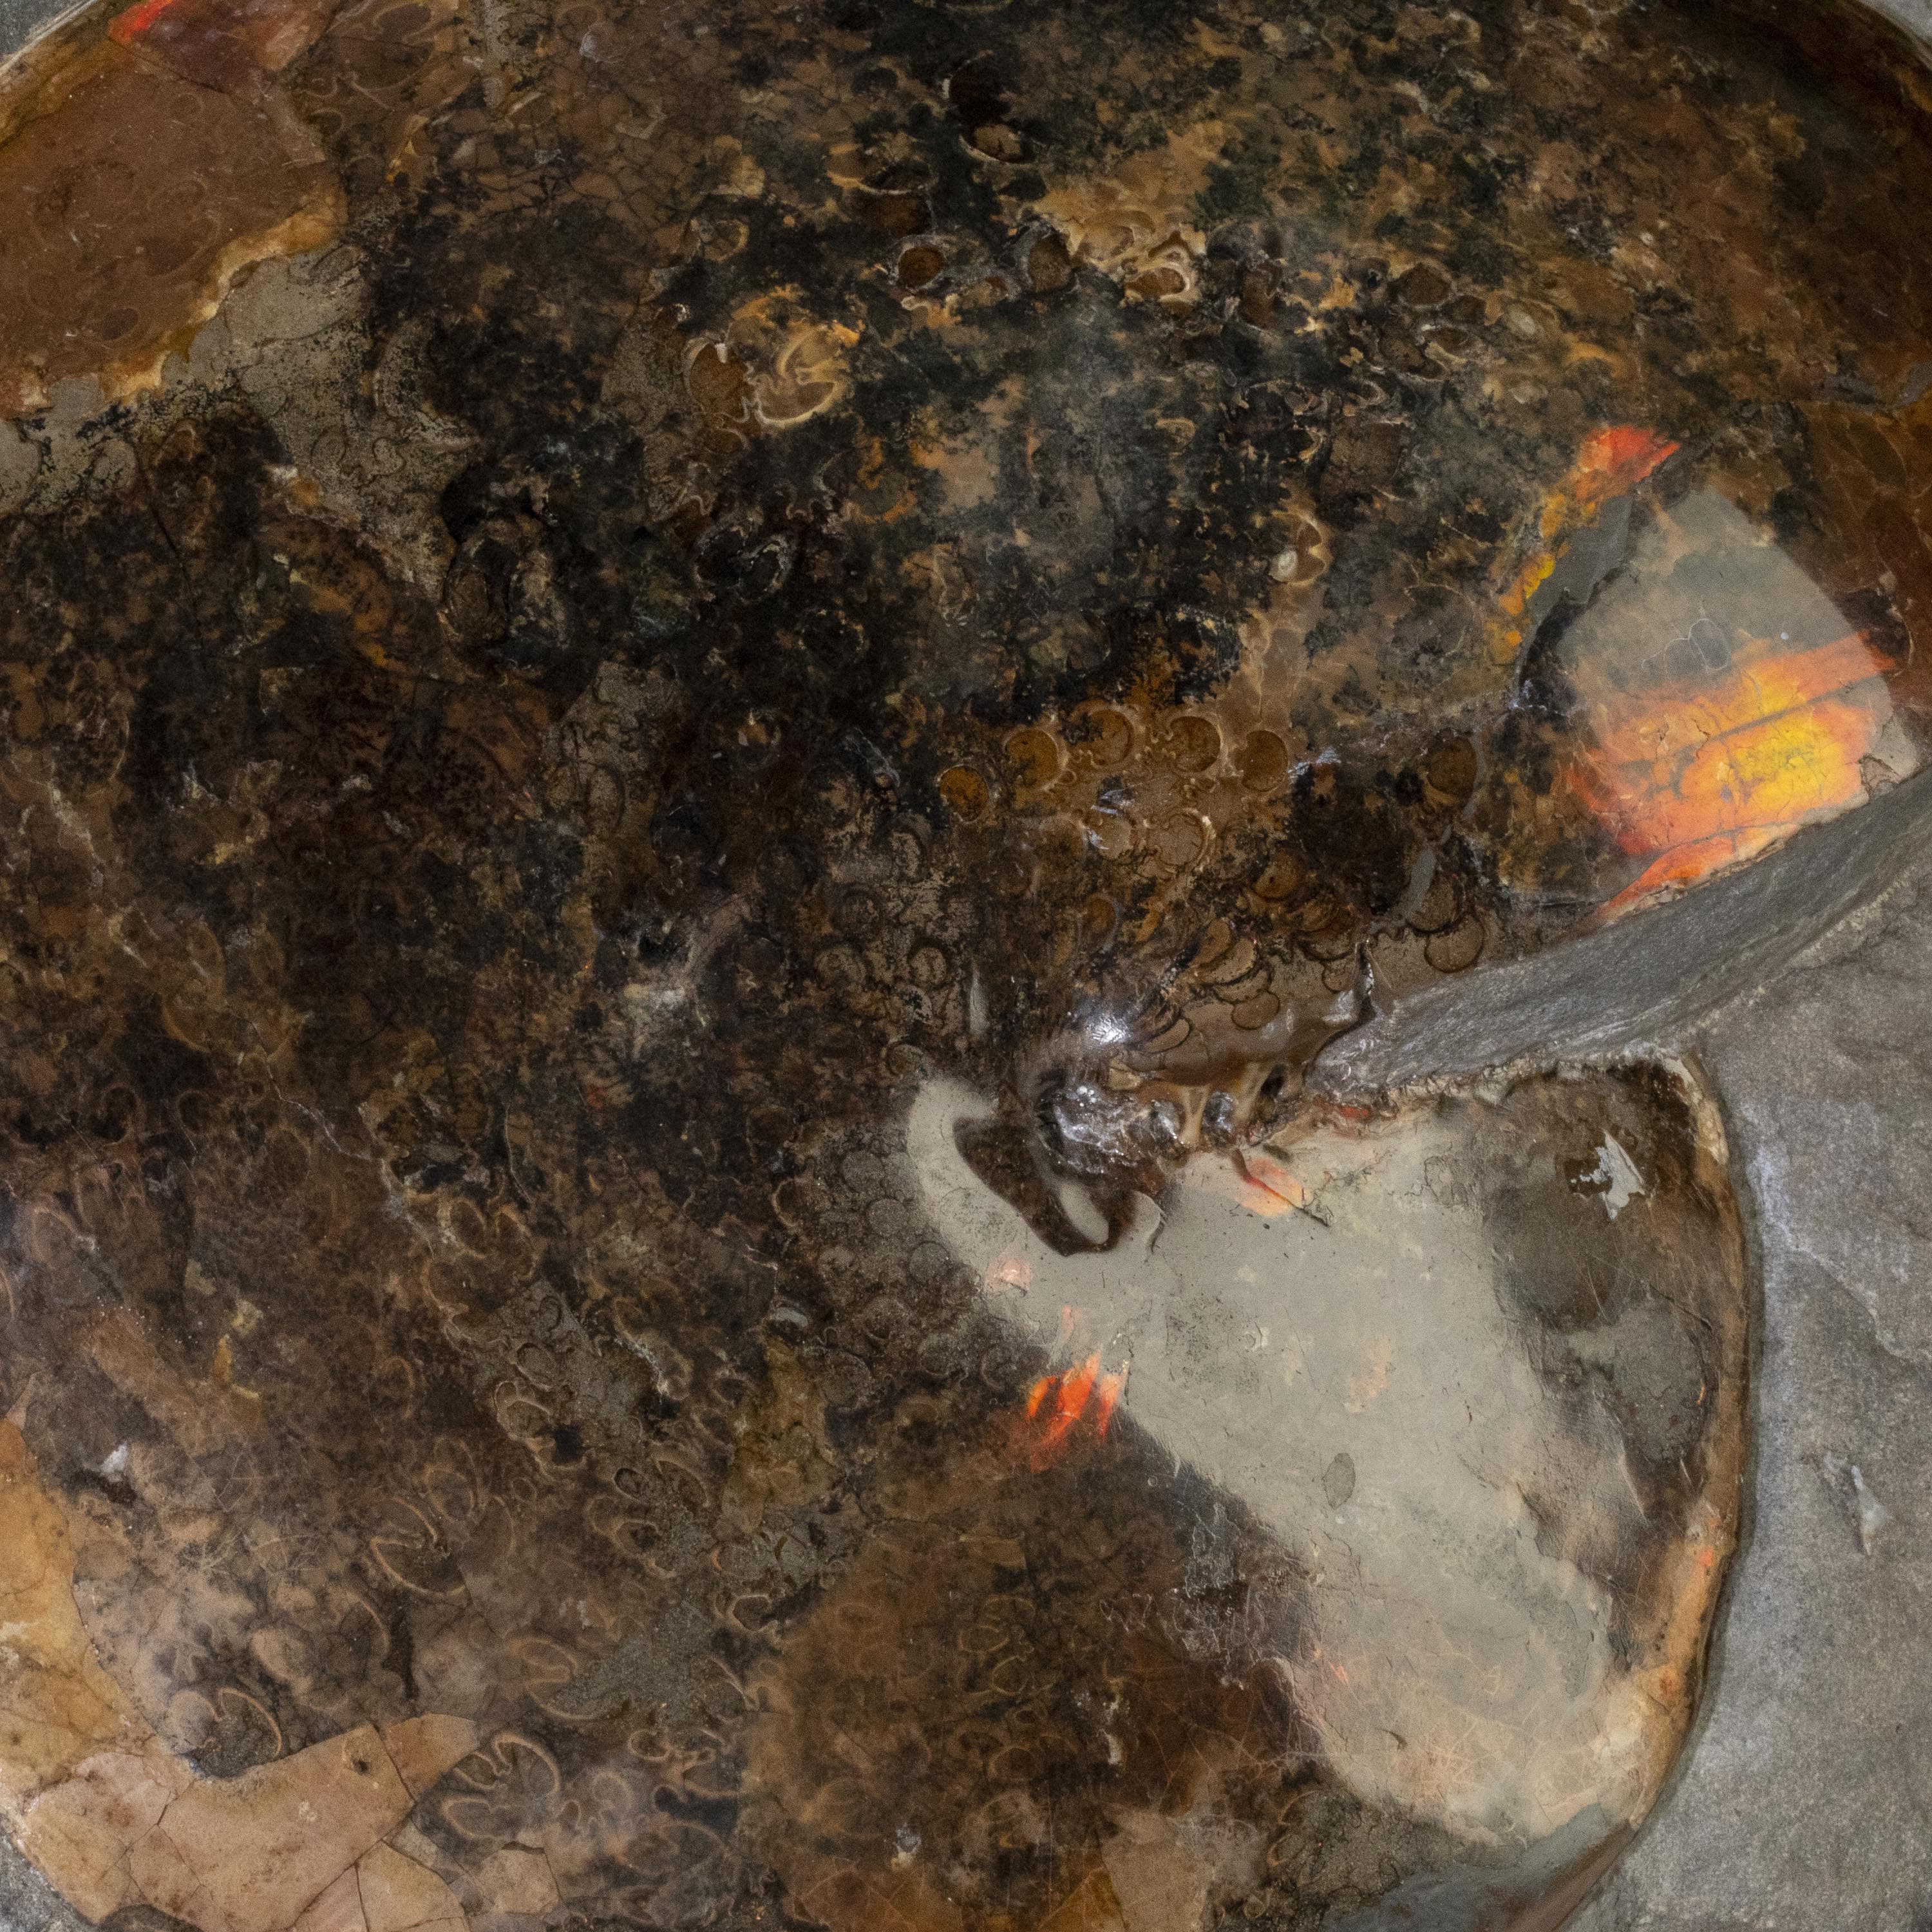 Kalifano Ammonites & Orthoceras Madagascar Ammonite in False Matrix - 12" AMG6900.001